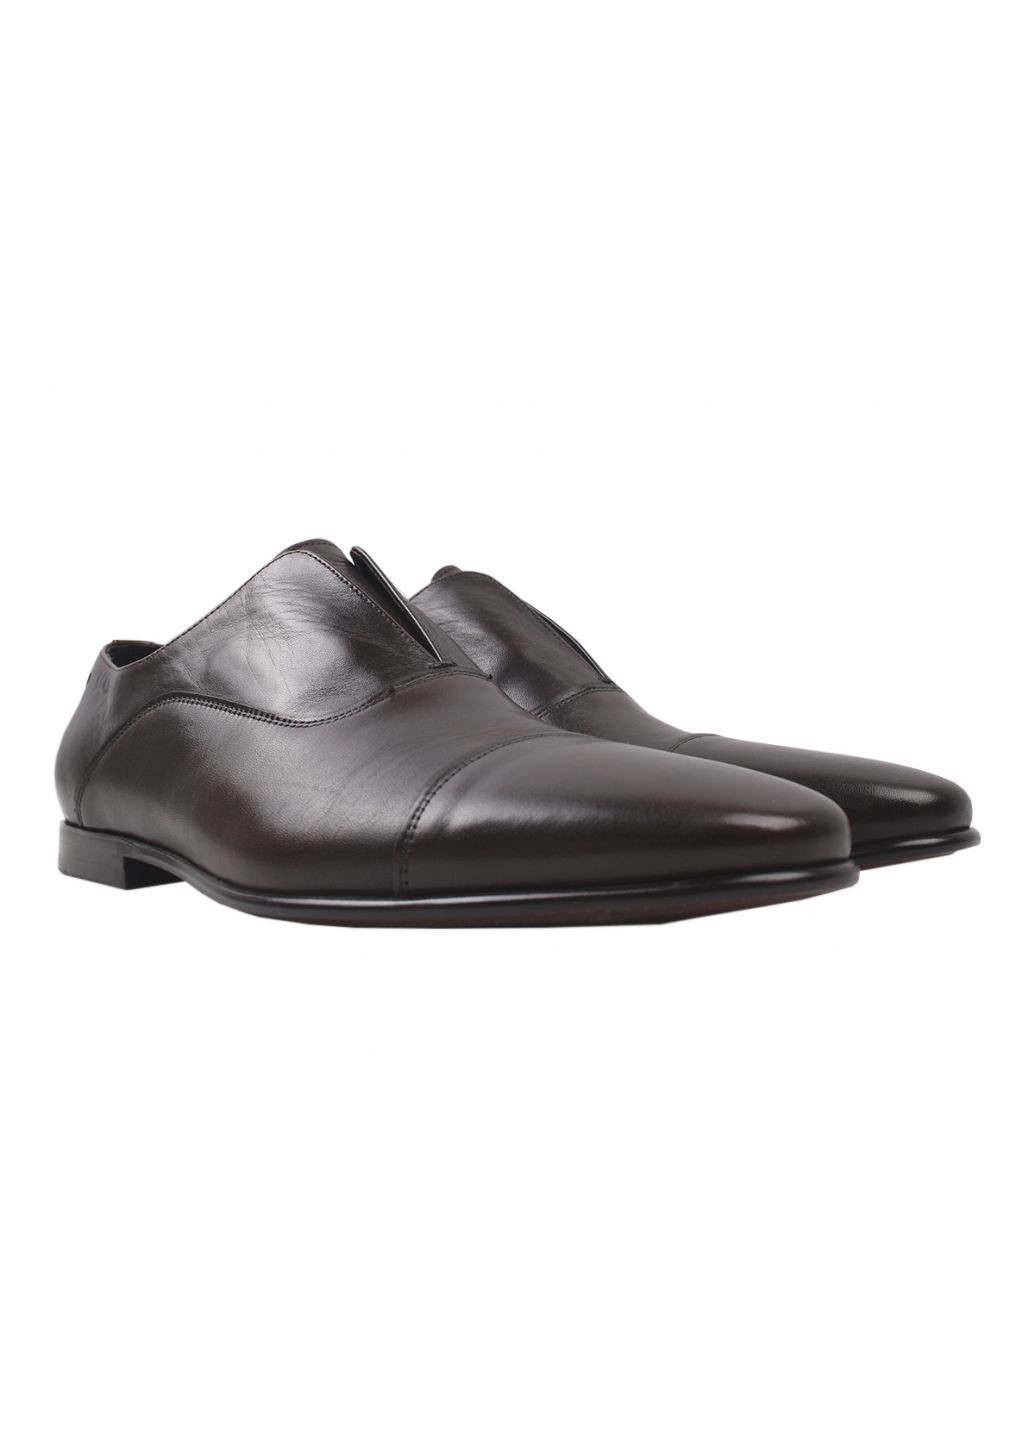 Бордовые туфли класика мужские натуральная кожа, цвет бордо Antoni Bianchi